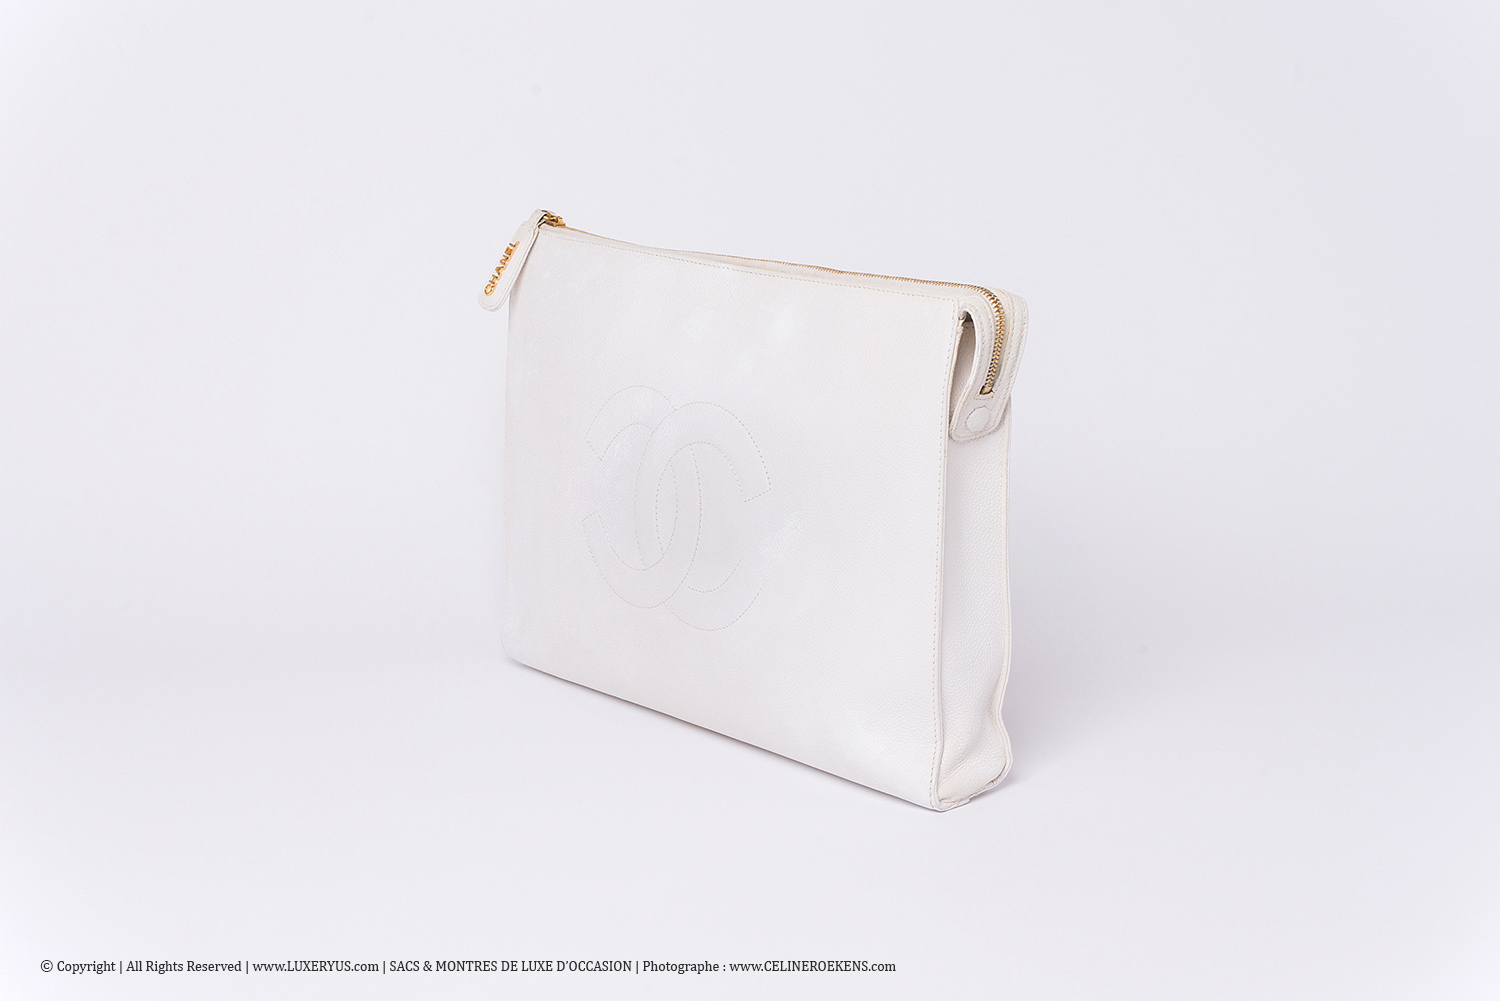 Porte-documents / Portfolio Vintage Chanel Authentique d'occasion en cuir grainé blanc